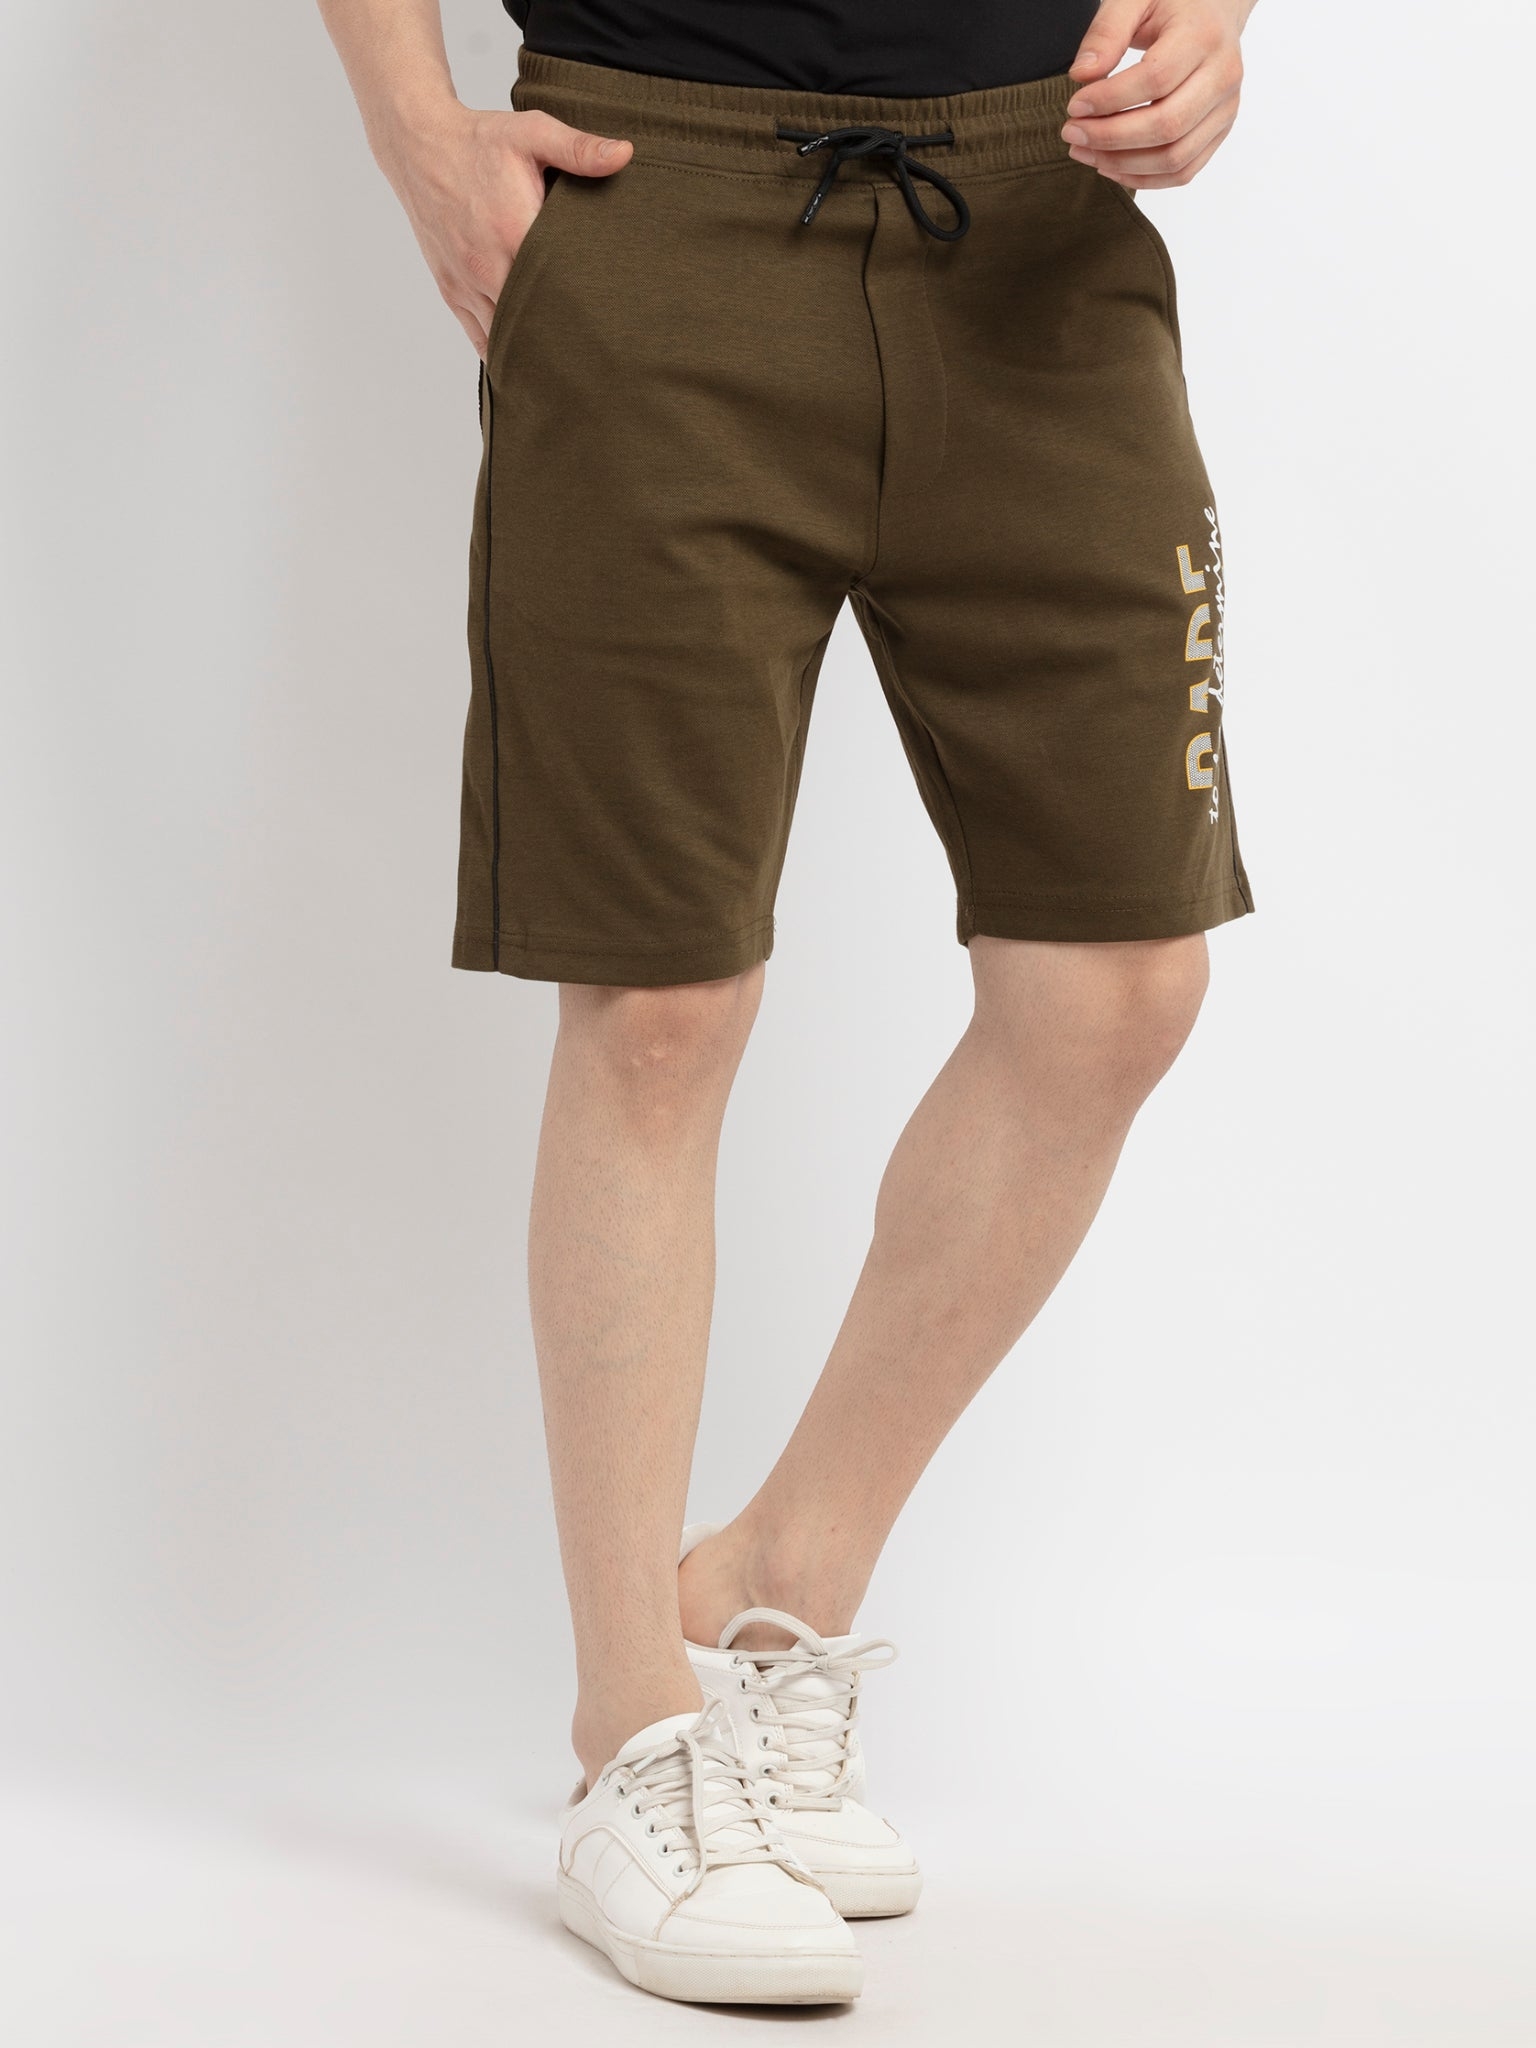 Status Quo | Men's Printed OLIVE Shorts